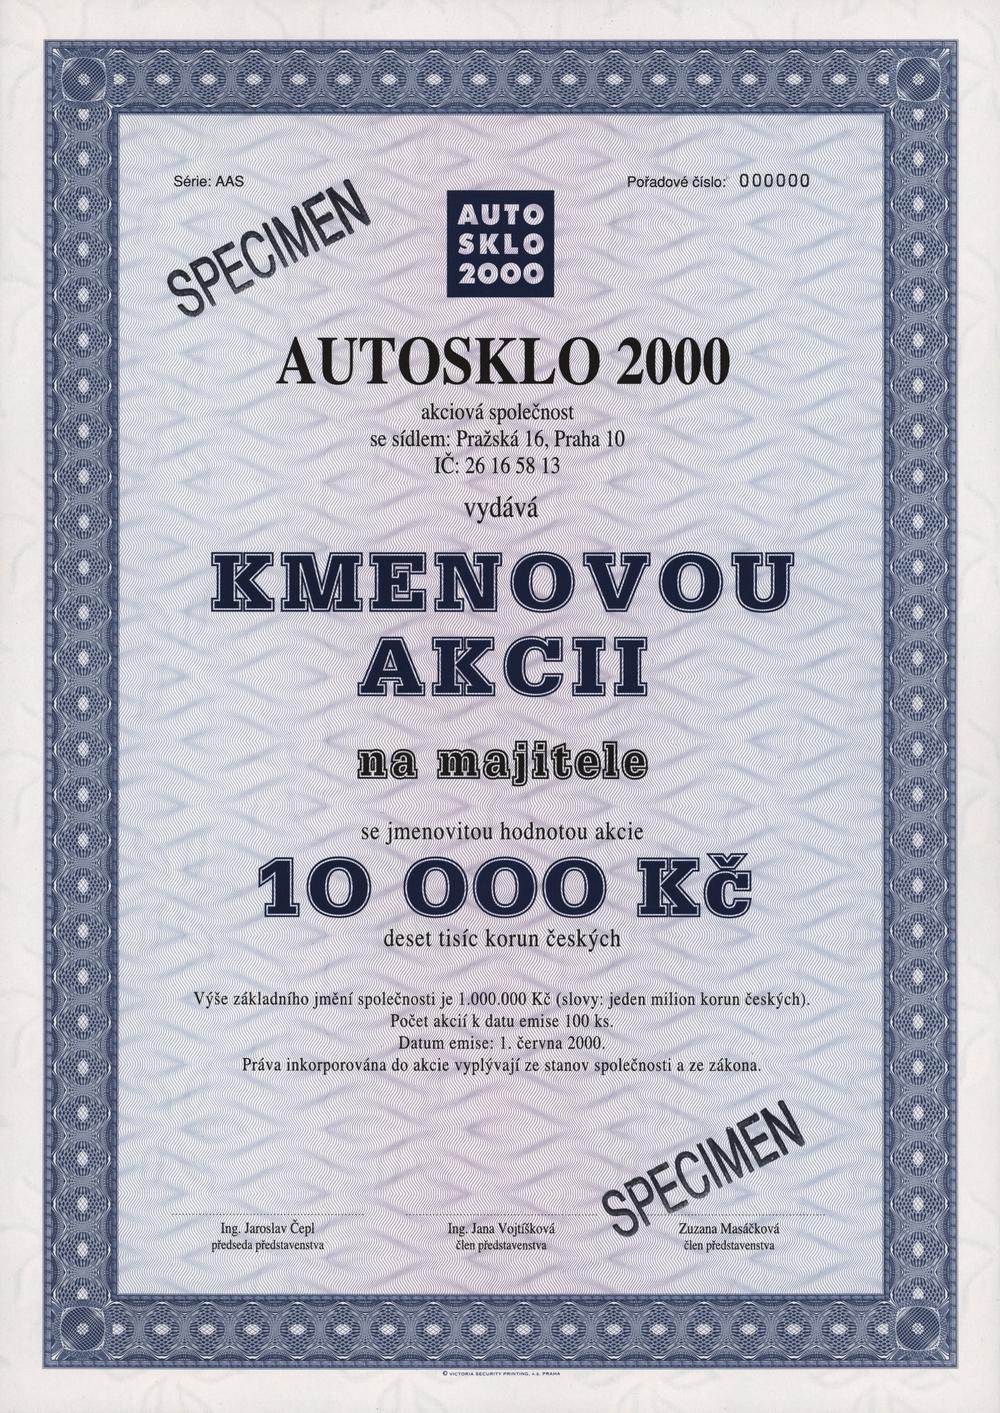 AUTOSKLO 2000 a.s., kmenová akcie na majitele na 10000 Kč, Praha 2000